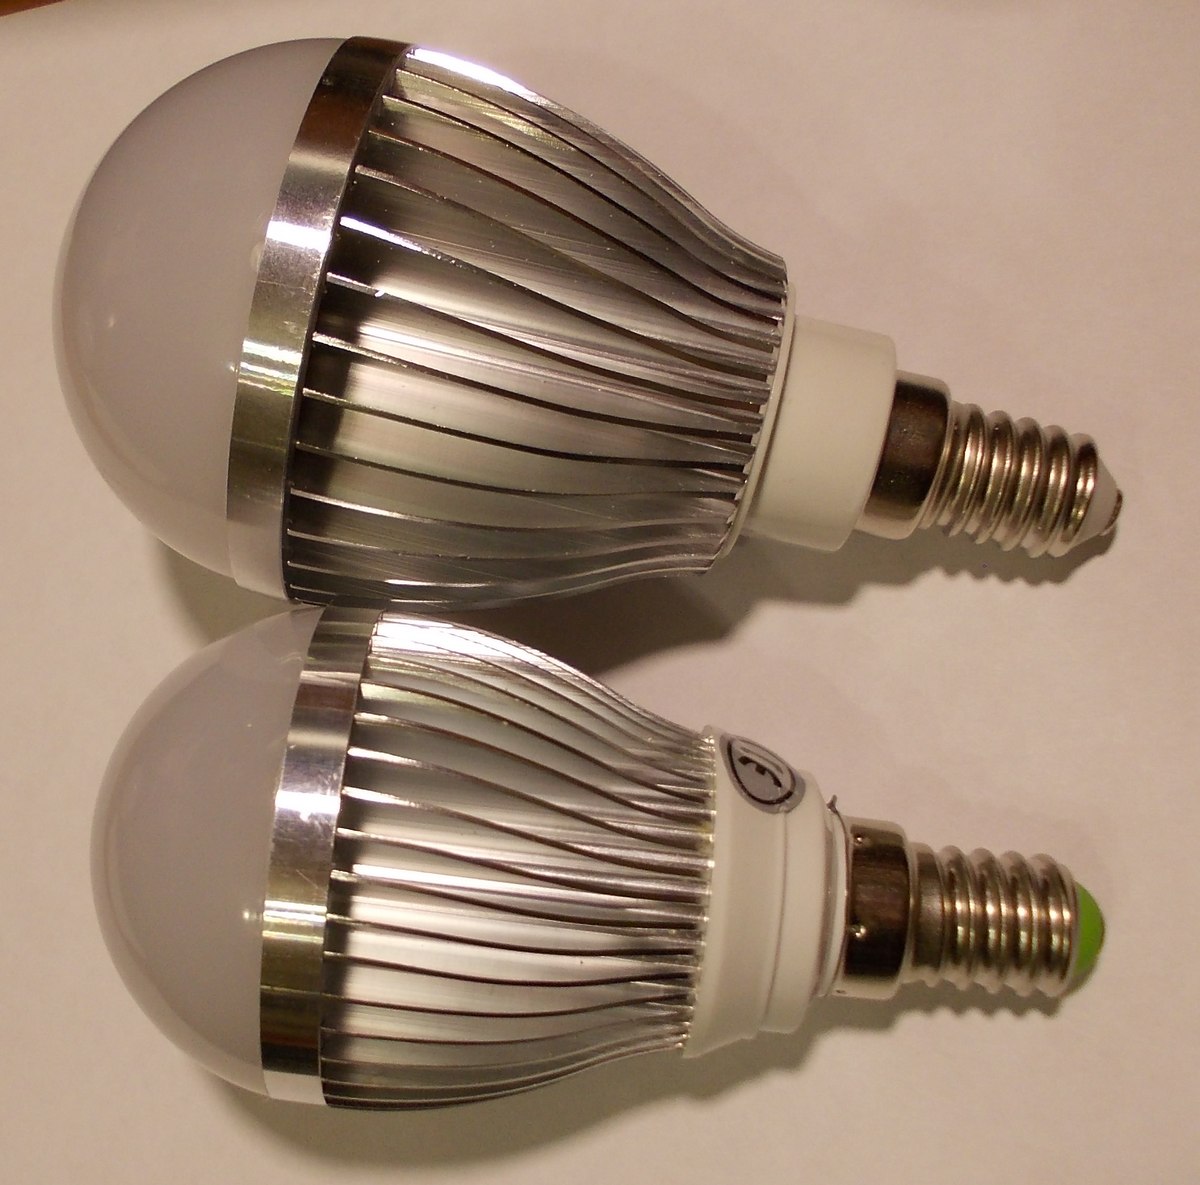 Регулируемые светодиодные лампы